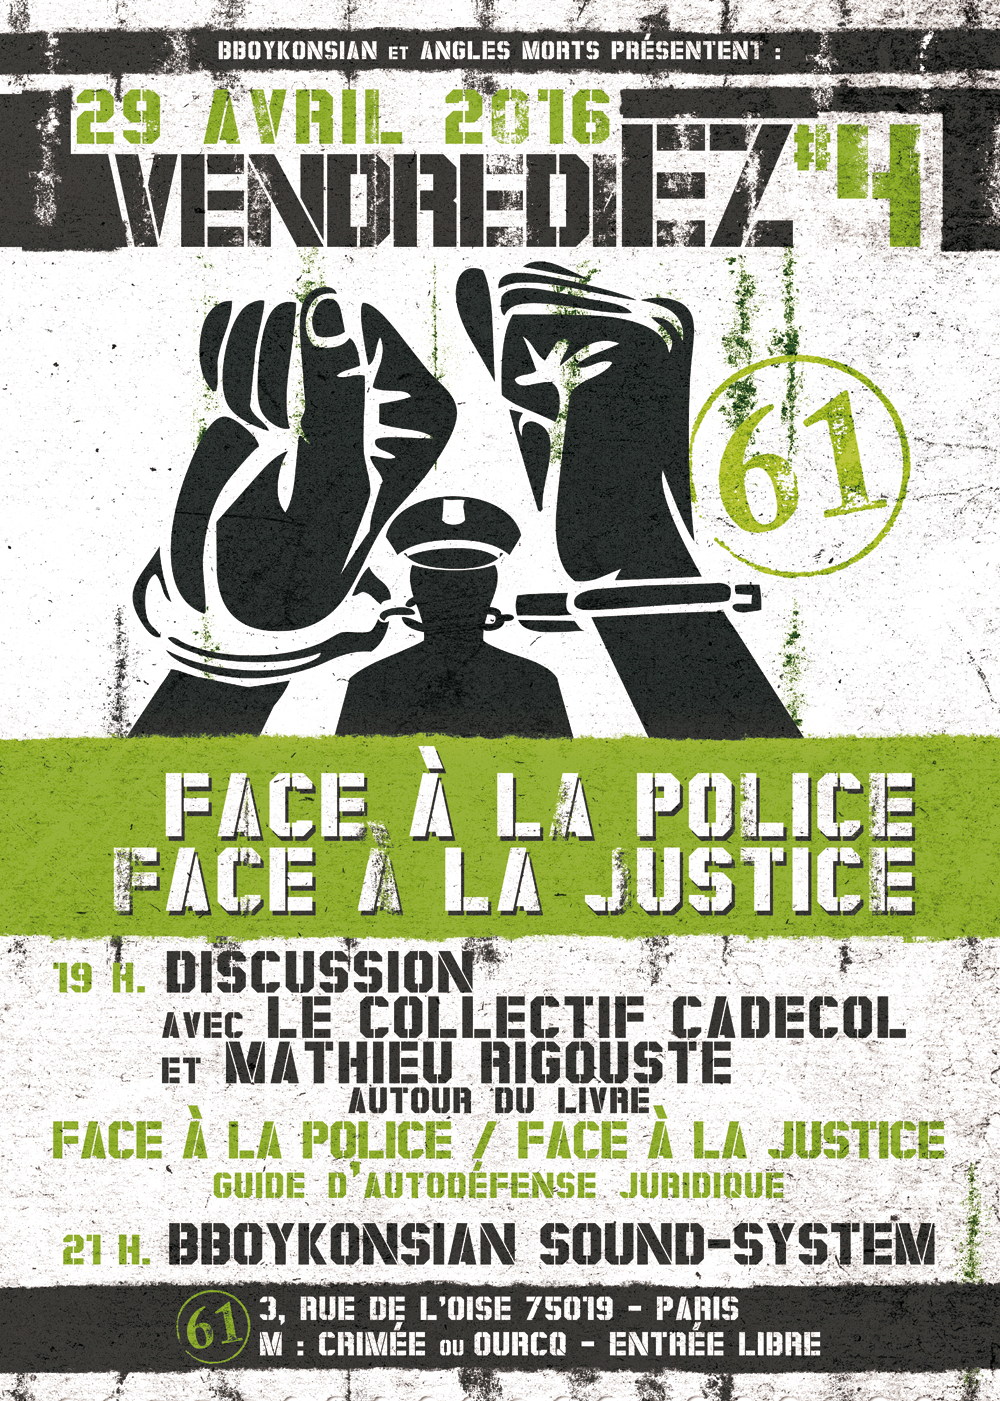 VendrediEZ #4 : Discussion avec CADECOL et Mathieu Rigouste autour du livre 'Face à la police / Face à la justice' le vendredi 29 avril 2016 à Paris